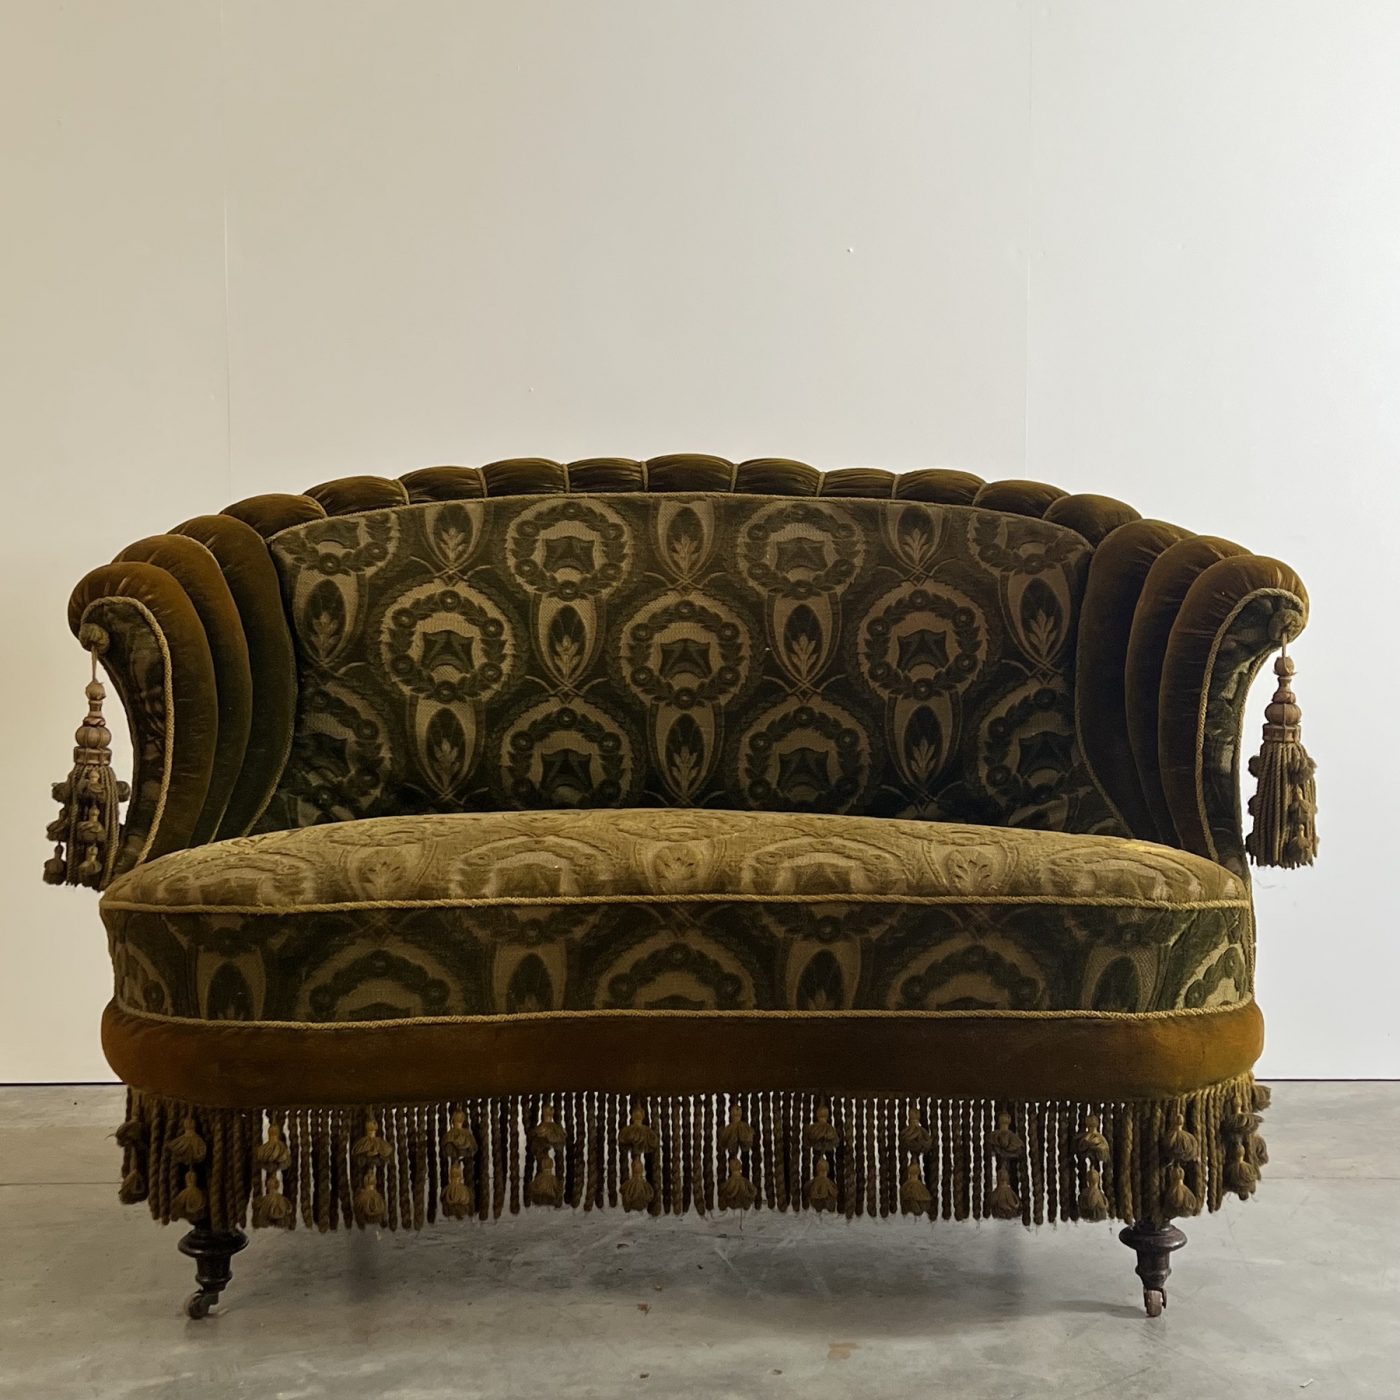 objet-vagabond-napoleon3-sofa0008